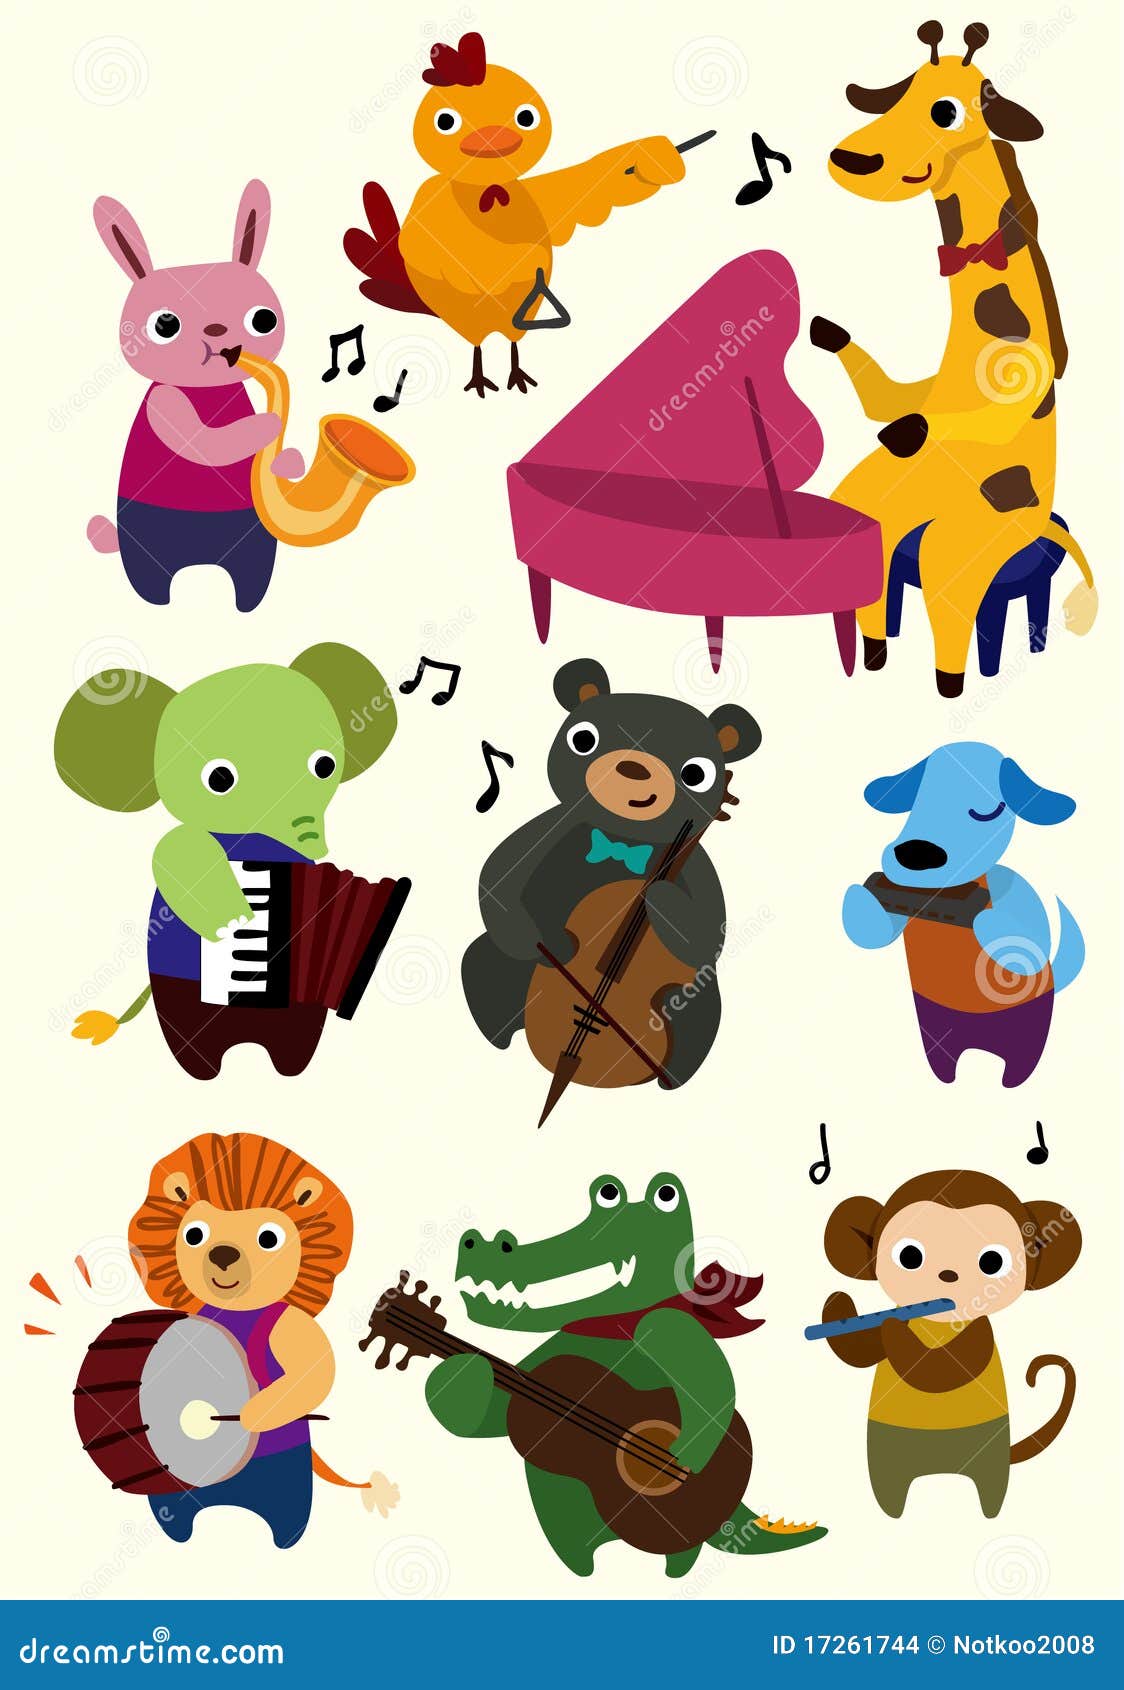 Cartoon music animal icon stock vector. Illustration of monkey - 17261744